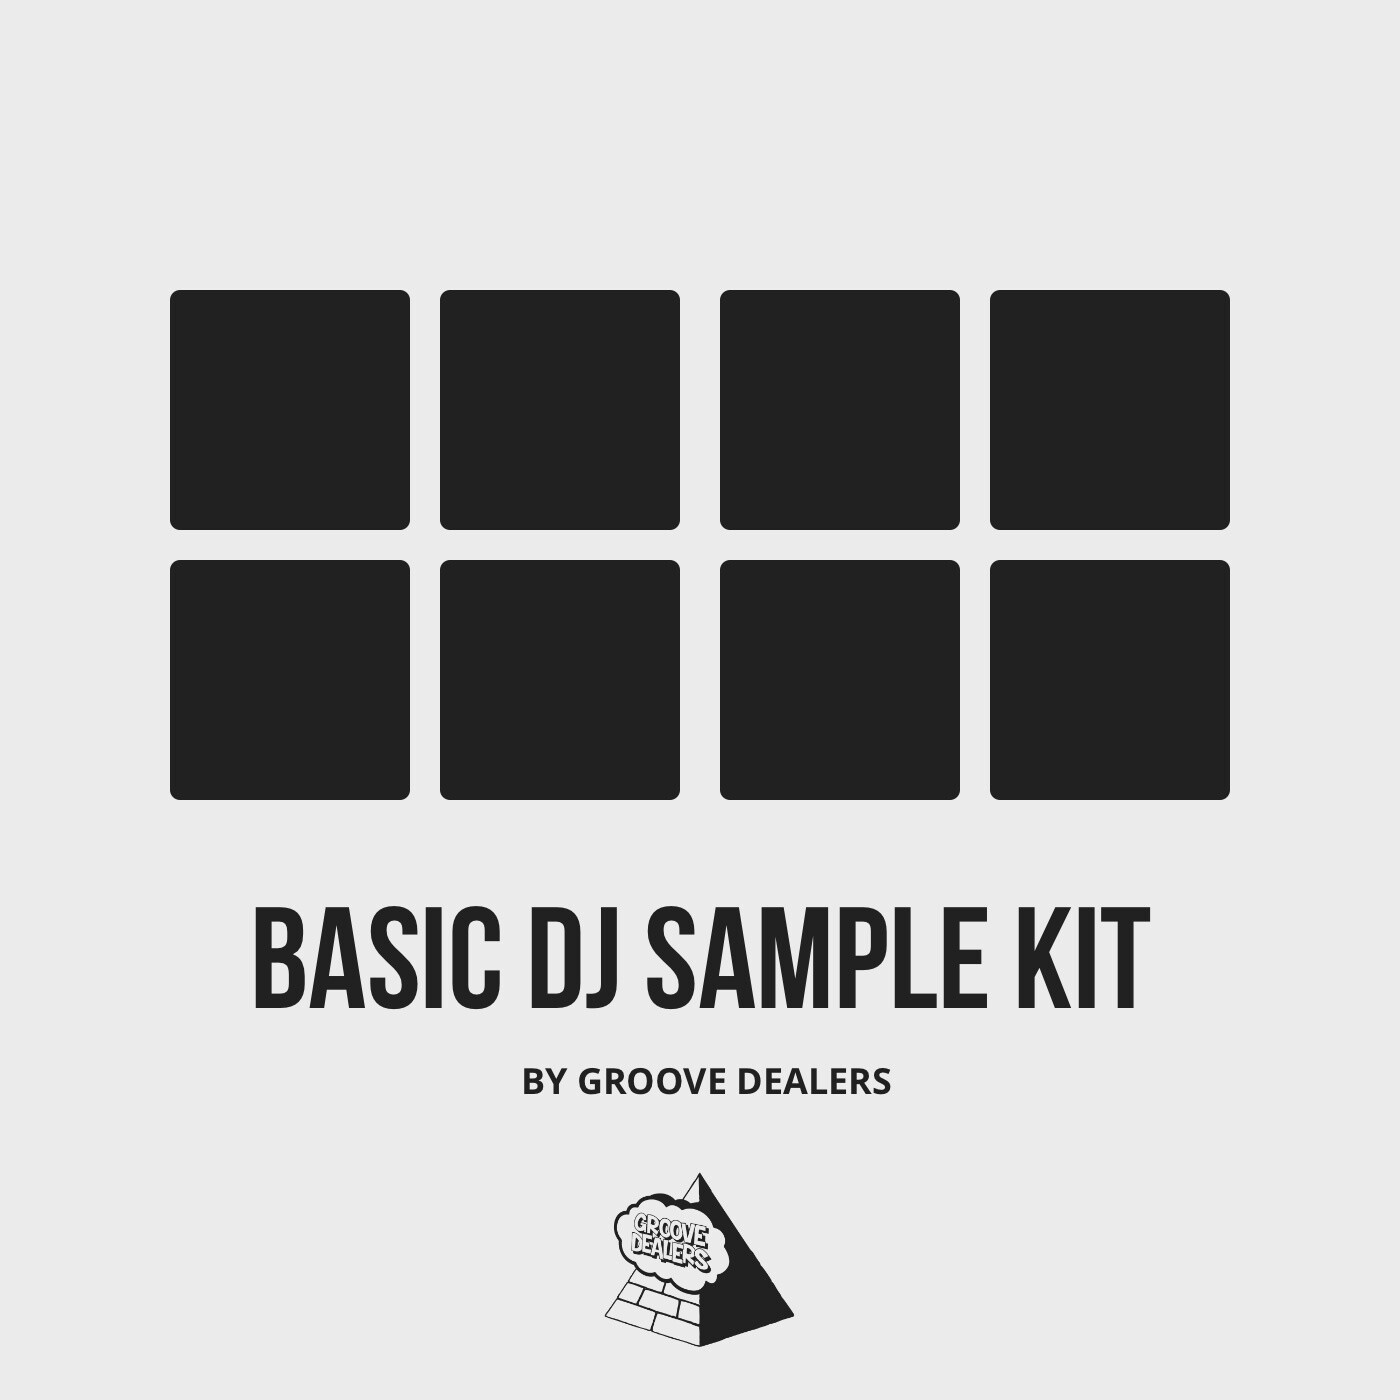 BASIC DJ SAMPLE KIT